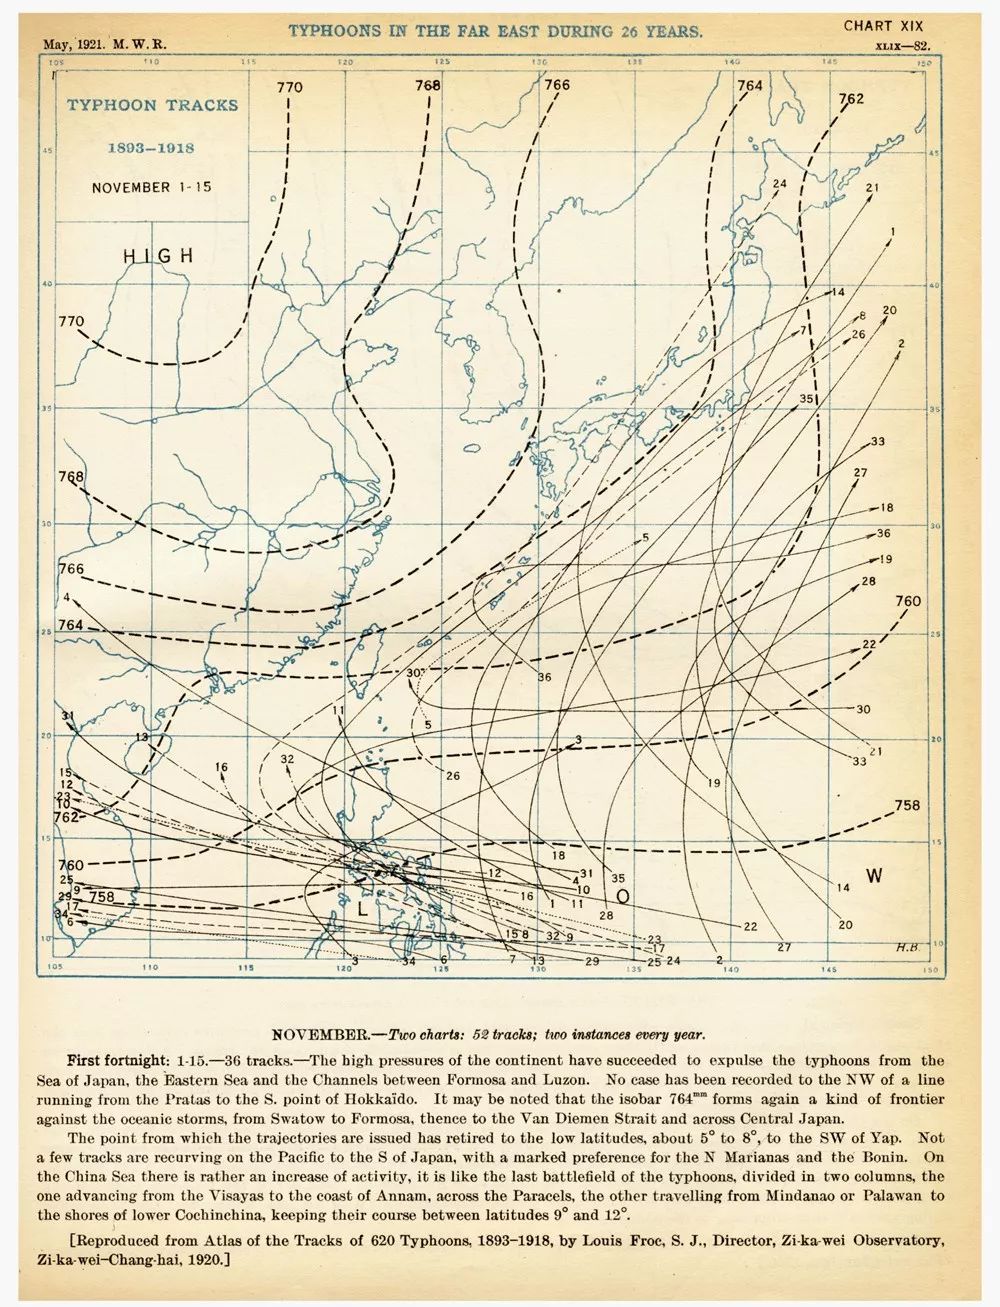 徐家汇观象台台长劳积勋主持编著的Atlas of the Tracks of 620 Typhoons 1893—1918记录大量珍贵资料。图为书中一幅远东地区26年间台风路径图。